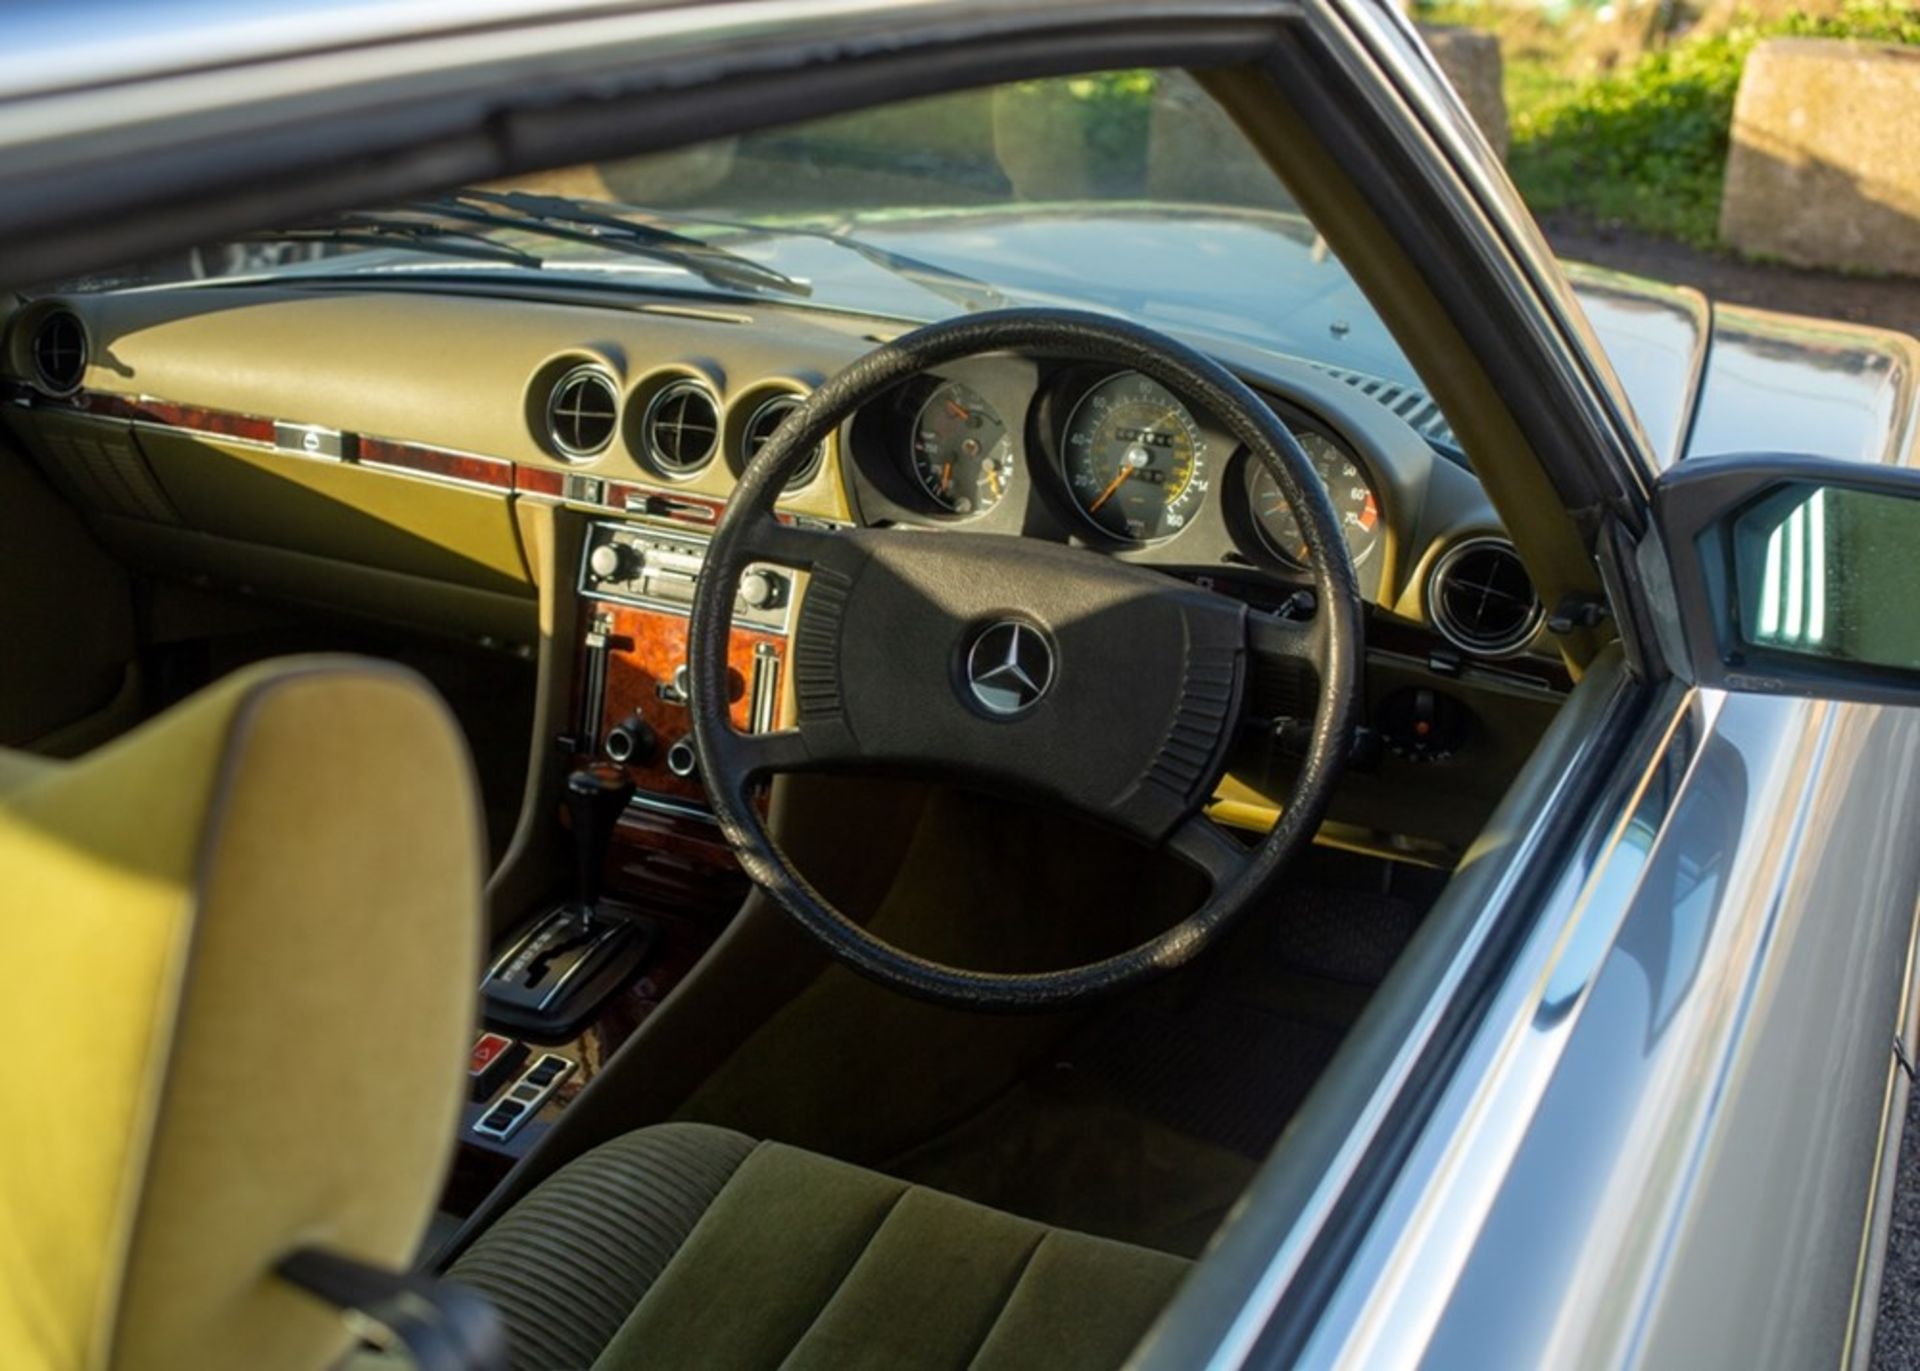 1978 Mercedes-Benz 450 SLC - Image 8 of 9